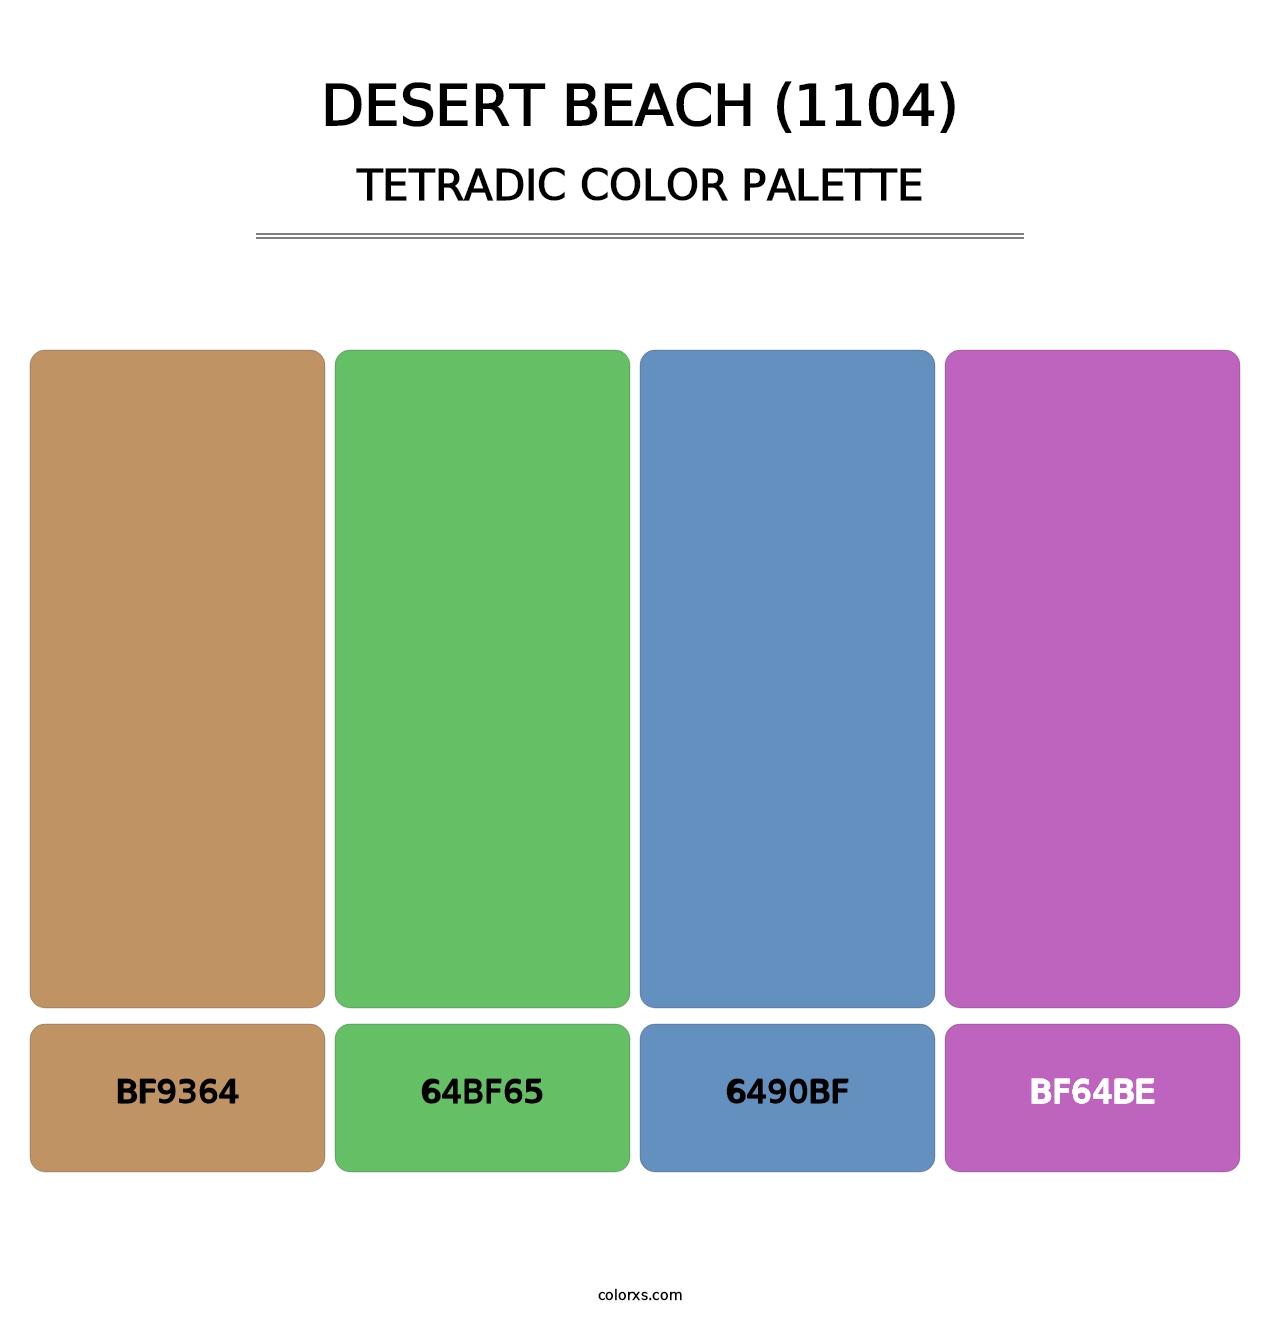 Desert Beach (1104) - Tetradic Color Palette